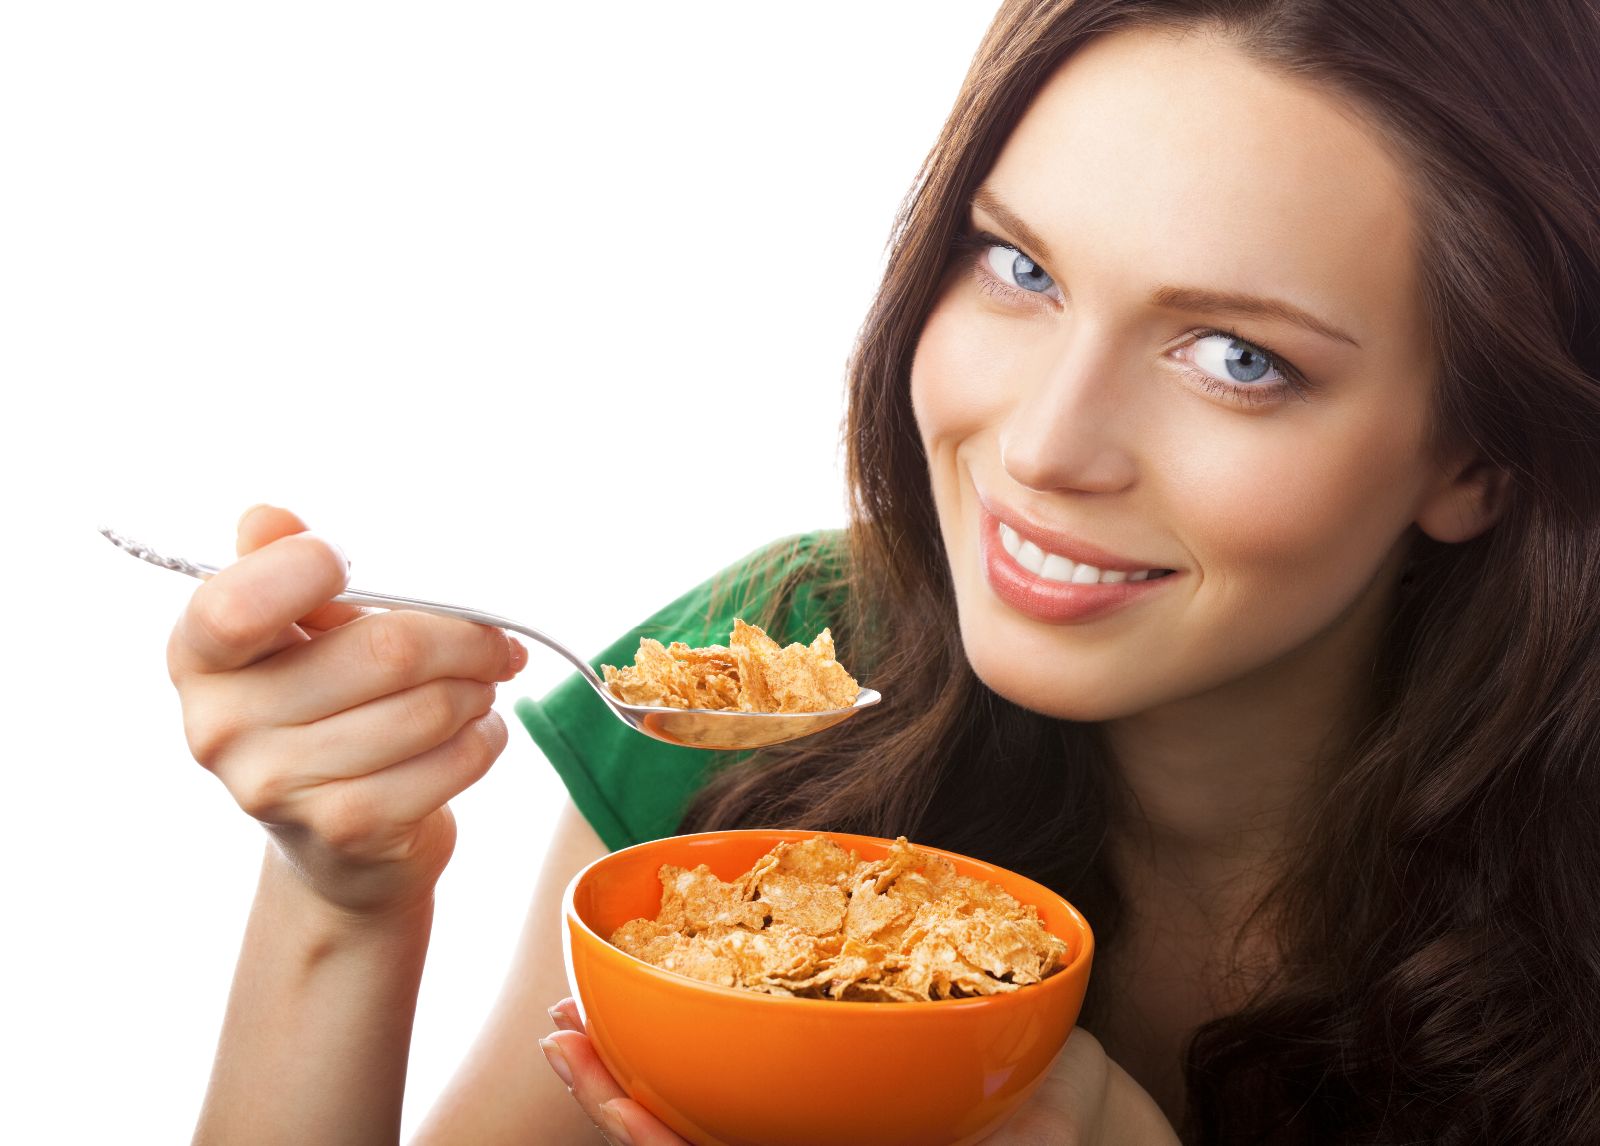 Mujer sonriendo con camisa verde y con una cuchara en la mano, con la otra sosteniendo plato hondo naranja que contiene cereal